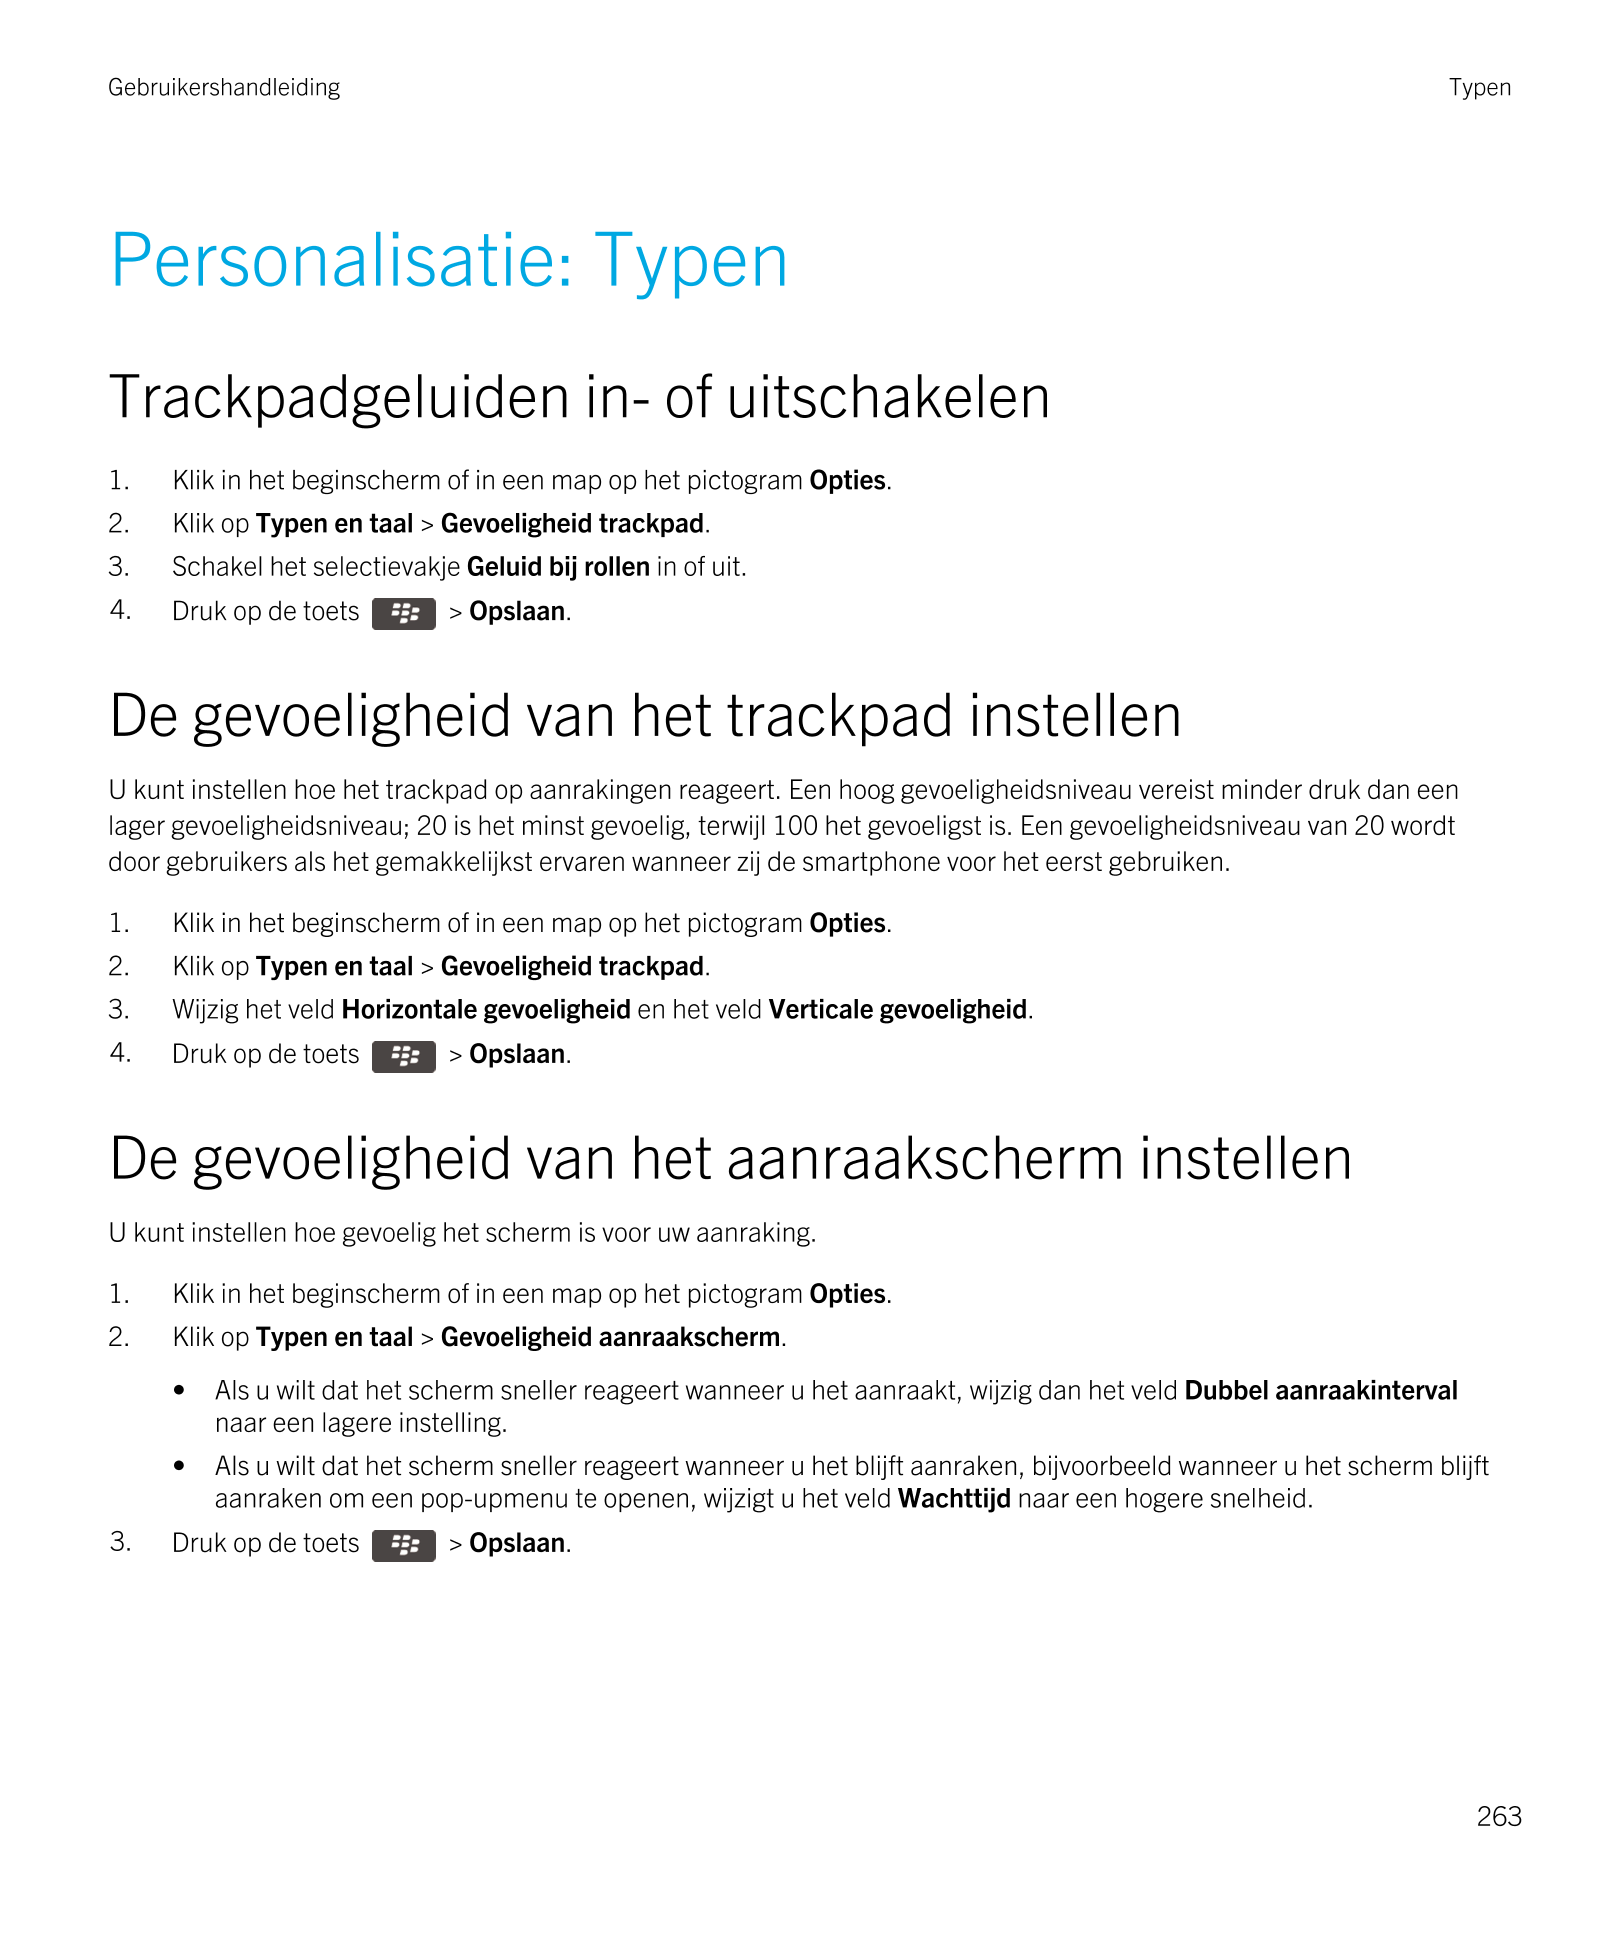 Gebruikershandleiding Typen
Personalisatie: Typen
Trackpadgeluiden in- of uitschakelen
1. Klik in het beginscherm of in een map 